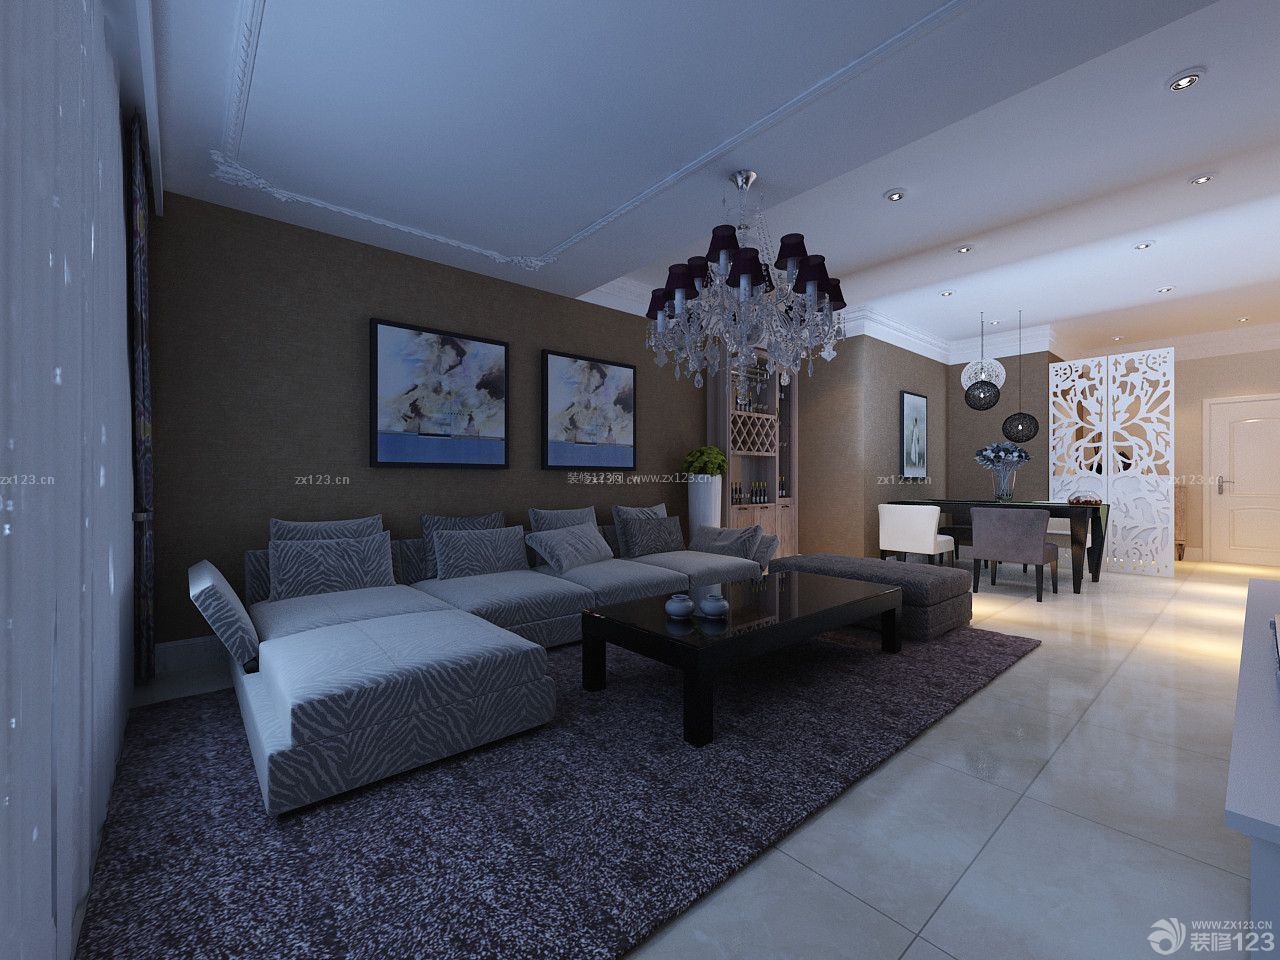 现代设计风格 三室两厅 家居客厅装修效果图 软沙发